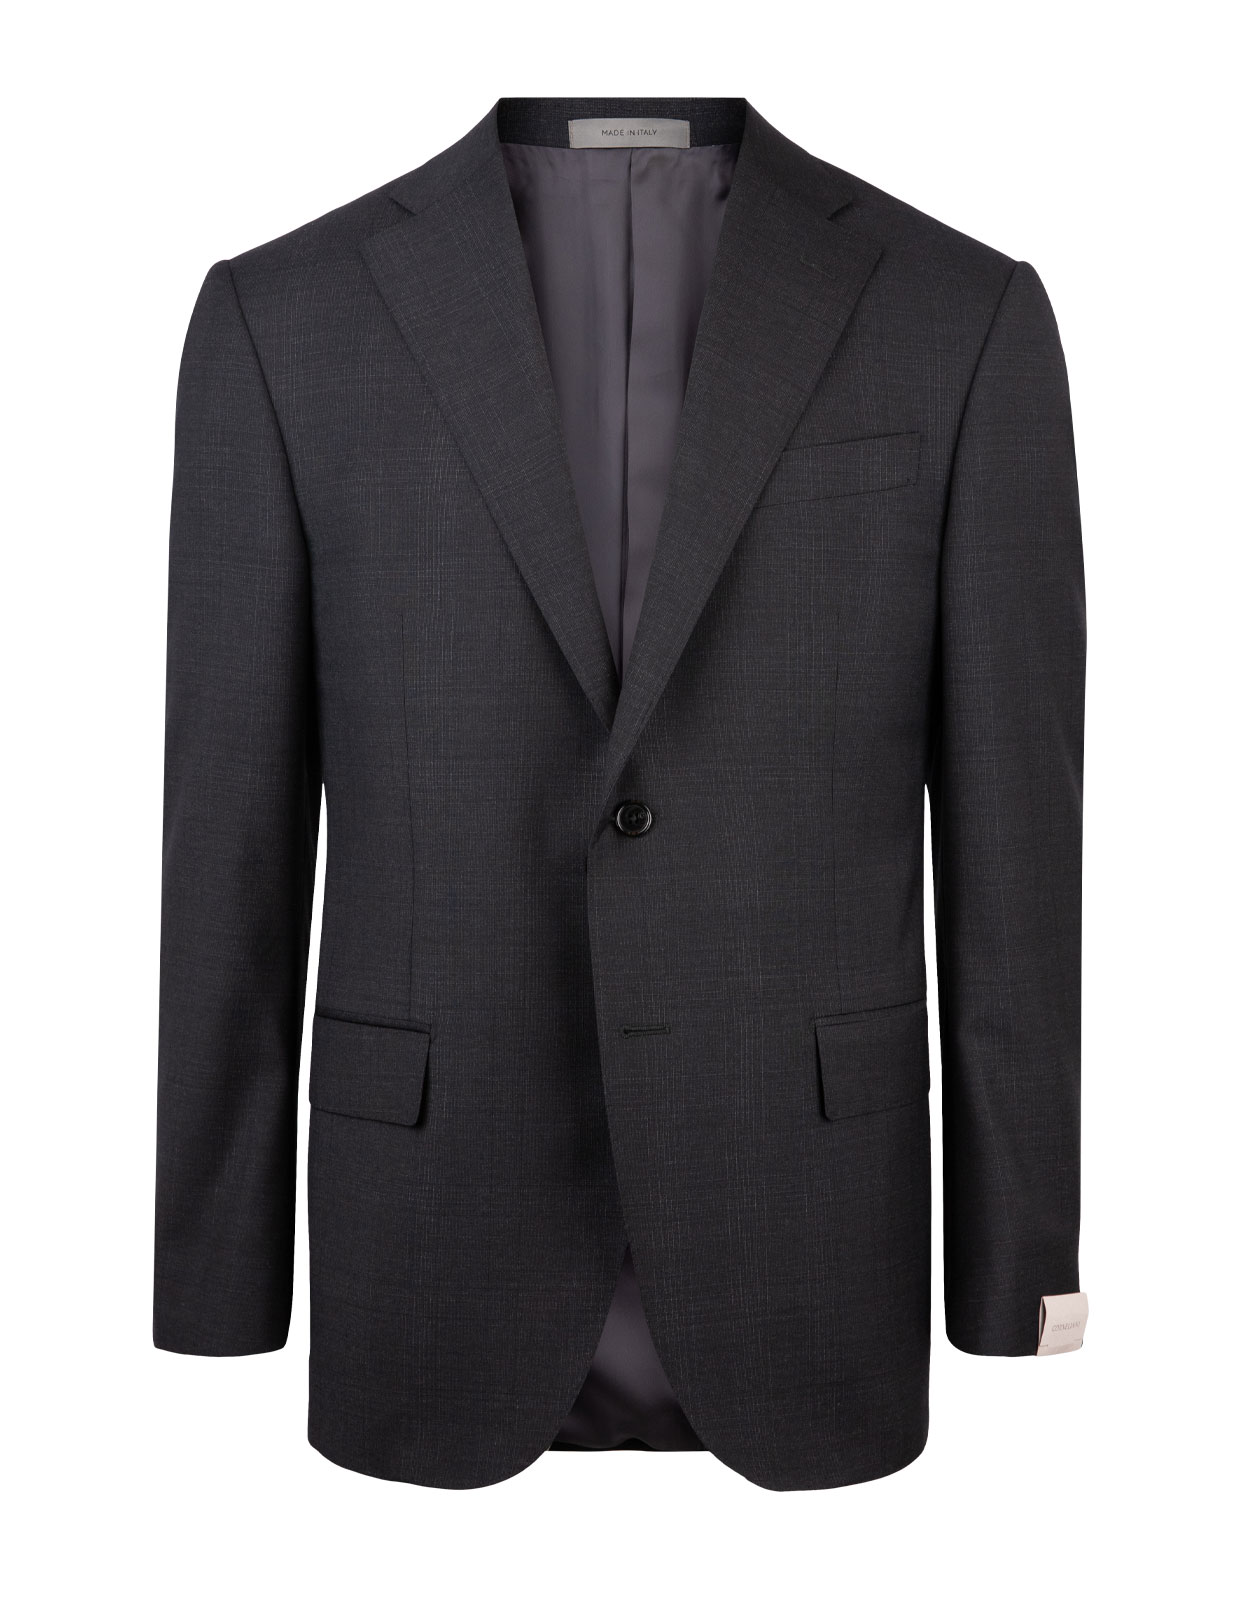 Leader Suit Wool Grey Check Stl 54